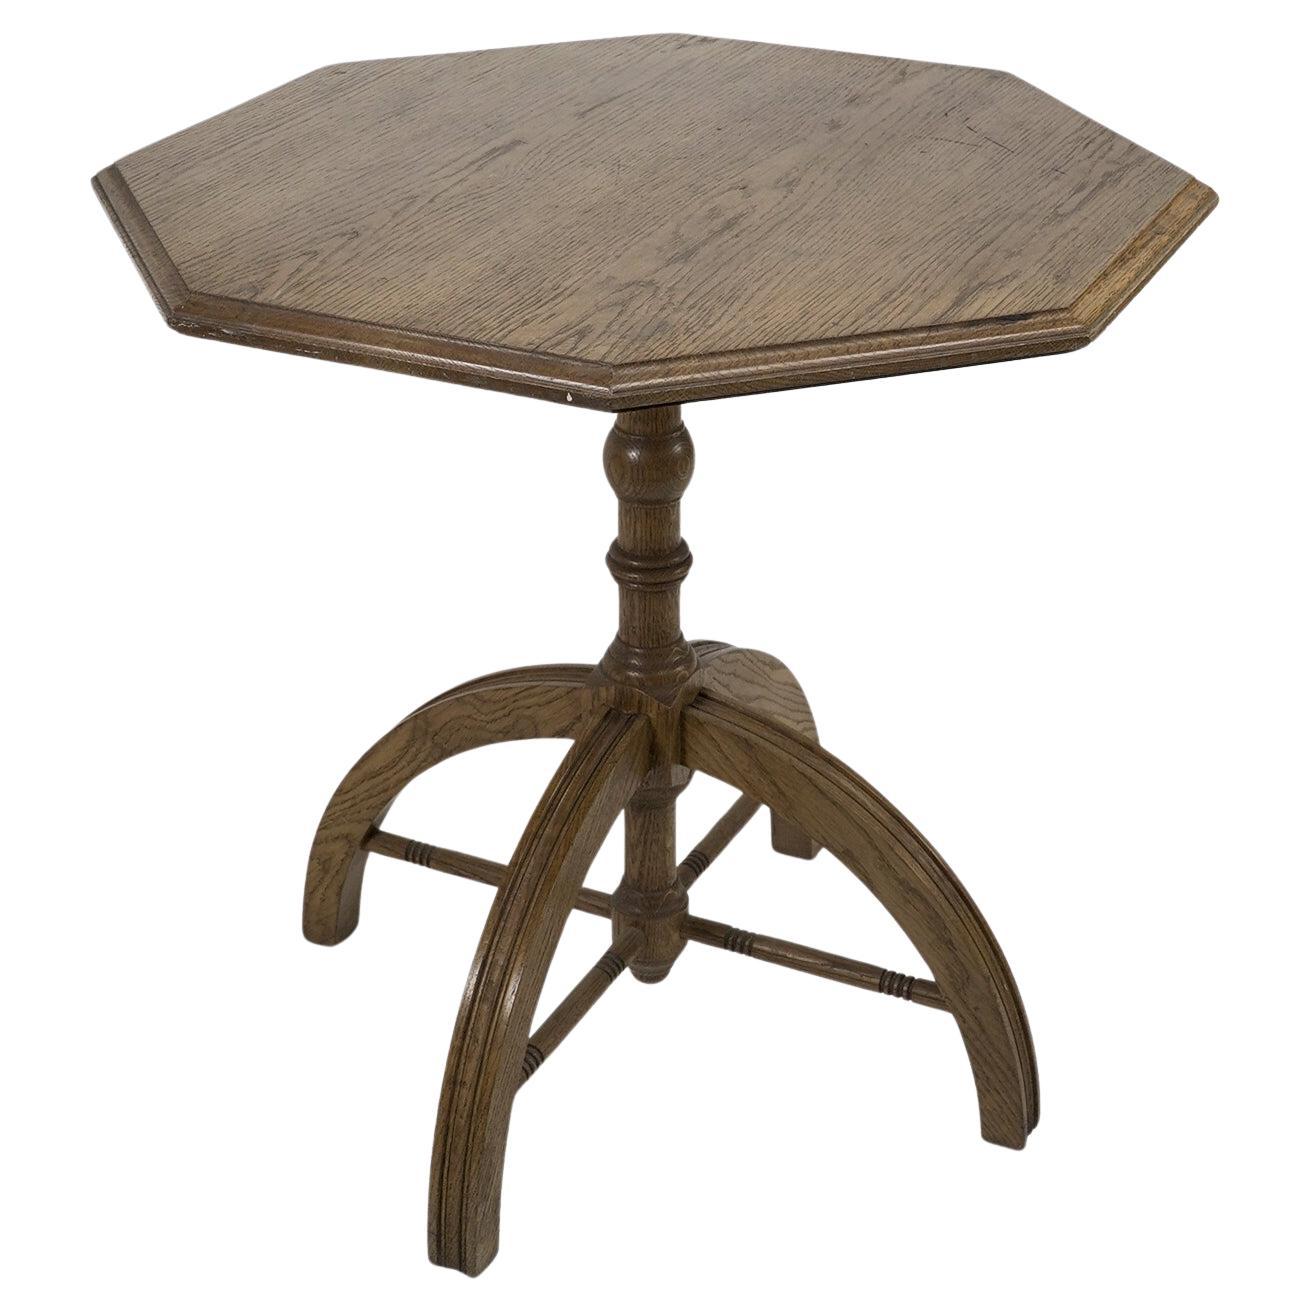 W N Pugin: „Pugin“. Ein moderner, handwerklich gefertigter, achteckiger Tisch aus Eiche im Stil der Gotischen Wiedergeburt